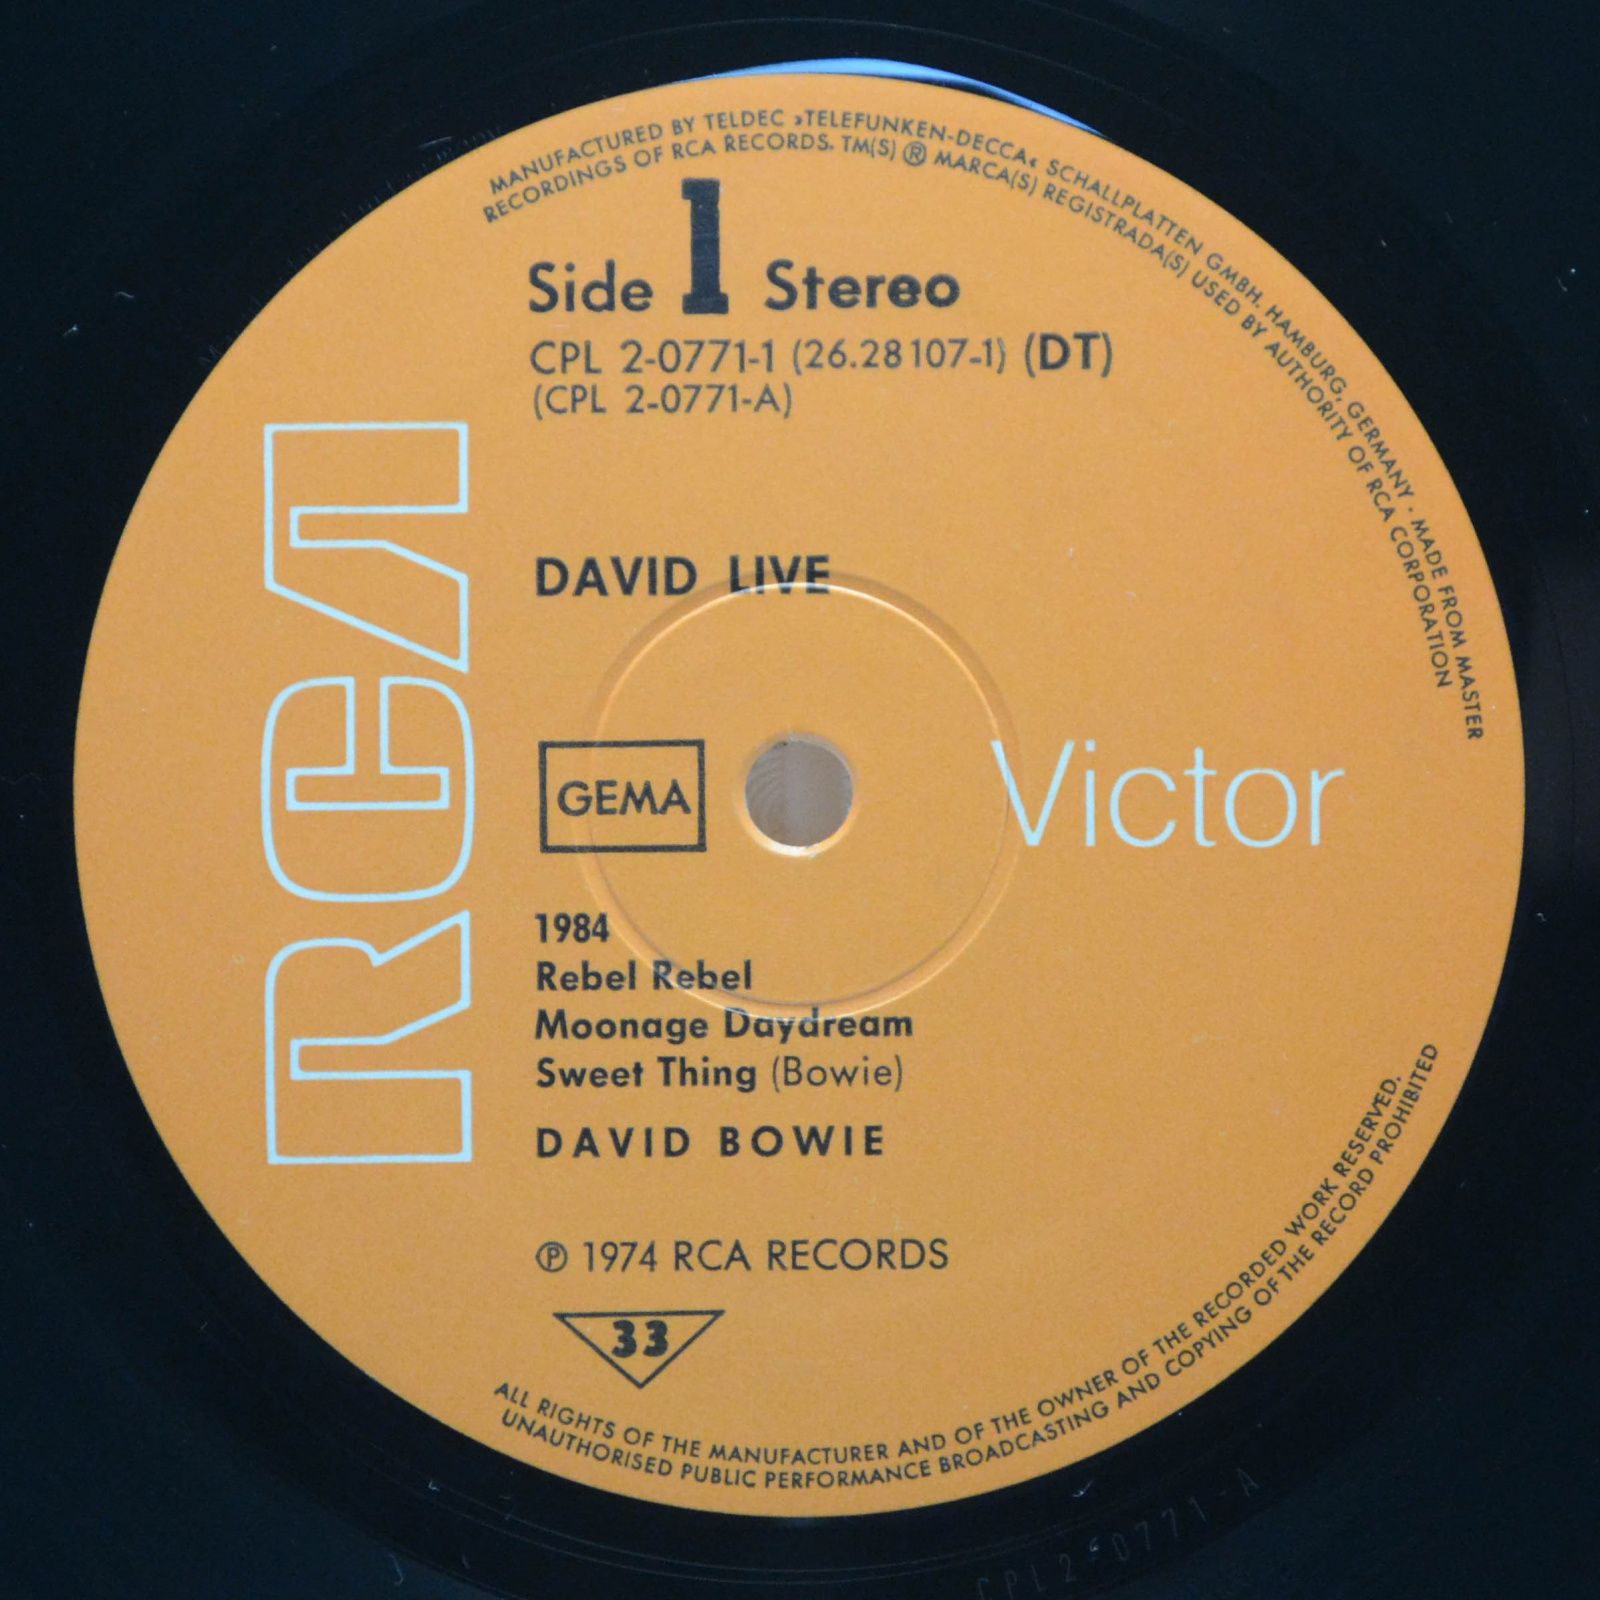 David Bowie — David Live (2LP), 1974